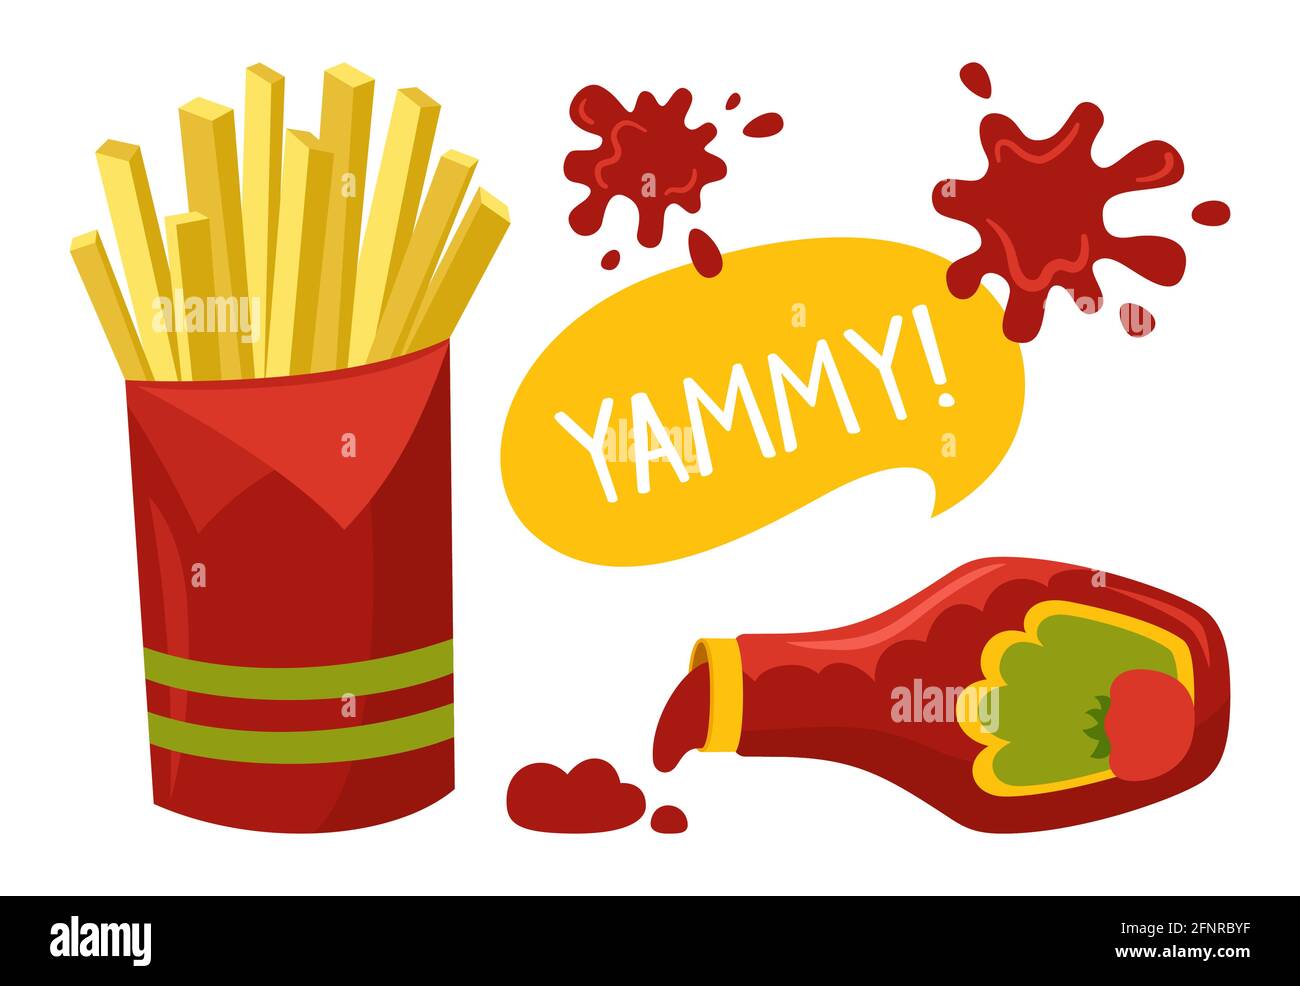 Patatas Fritas Y Salsa De Tomate Ketchup Dibujos Animados De Comida Rápida Mancha De Ketchup